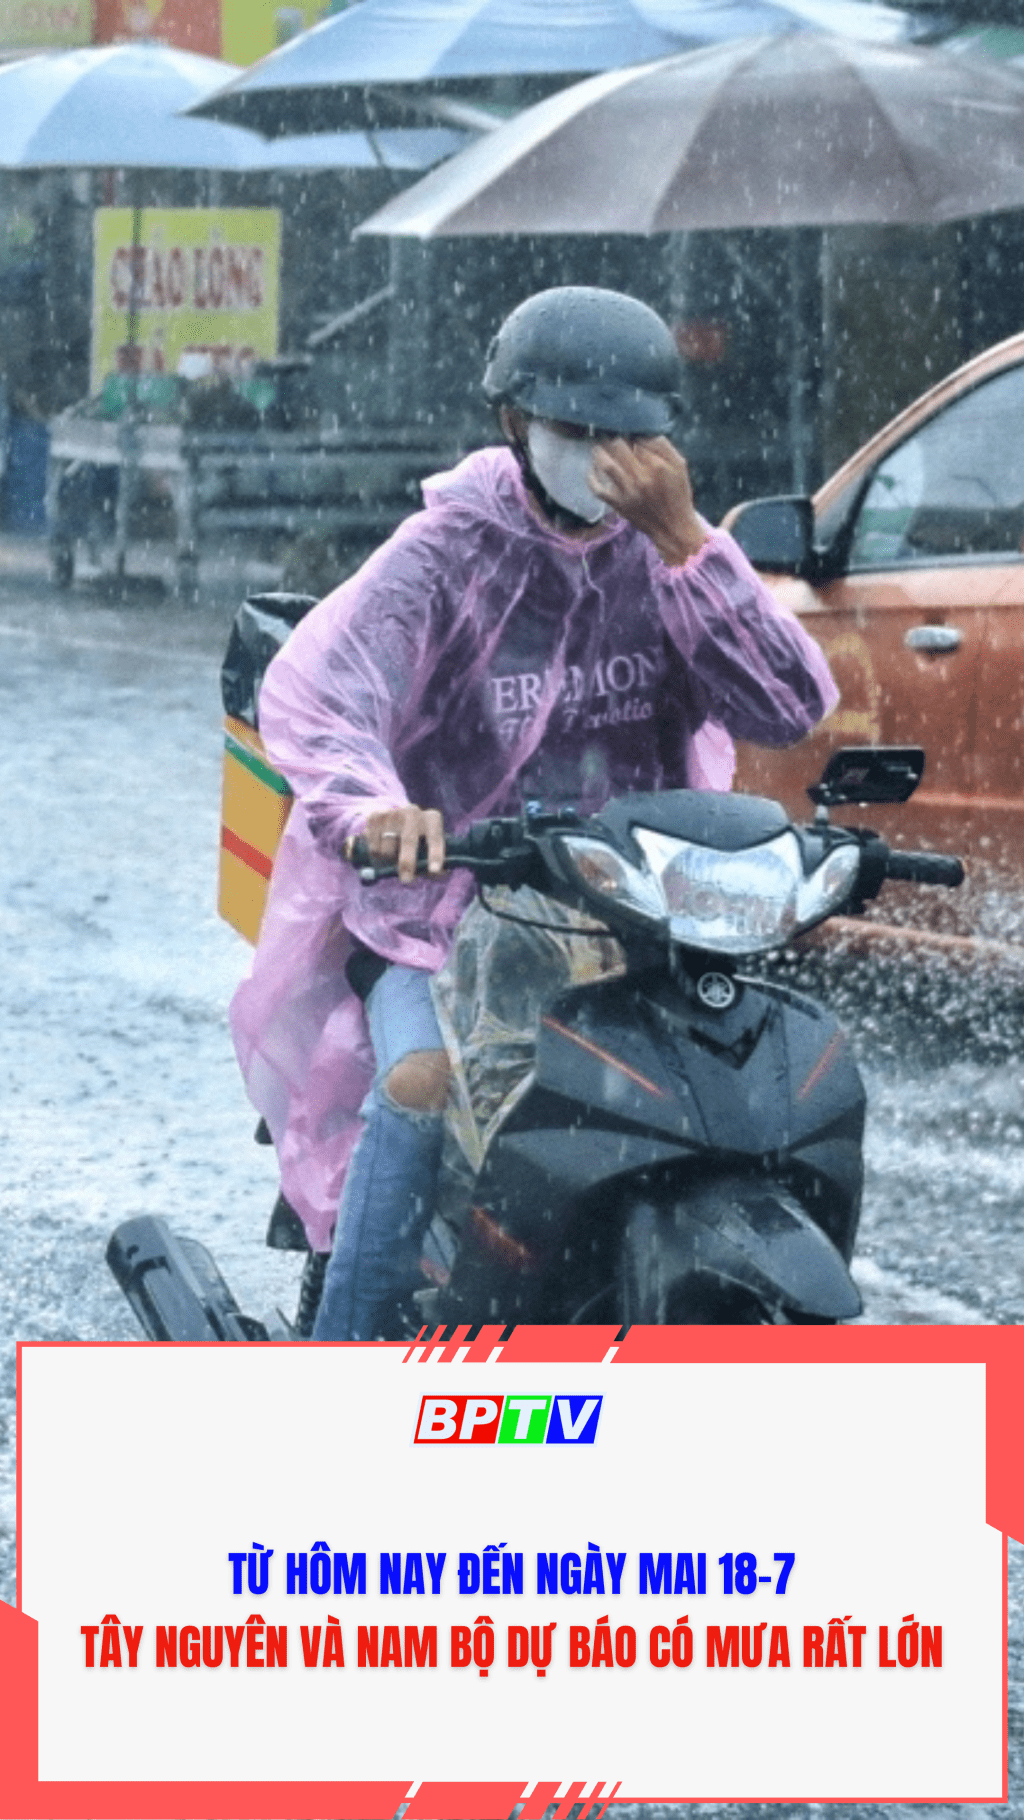 Từ hôm nay đến ngày mai 18-7, Tây Nguyên Và Nam Bộ dự báo có mưa rất lớn #shorts